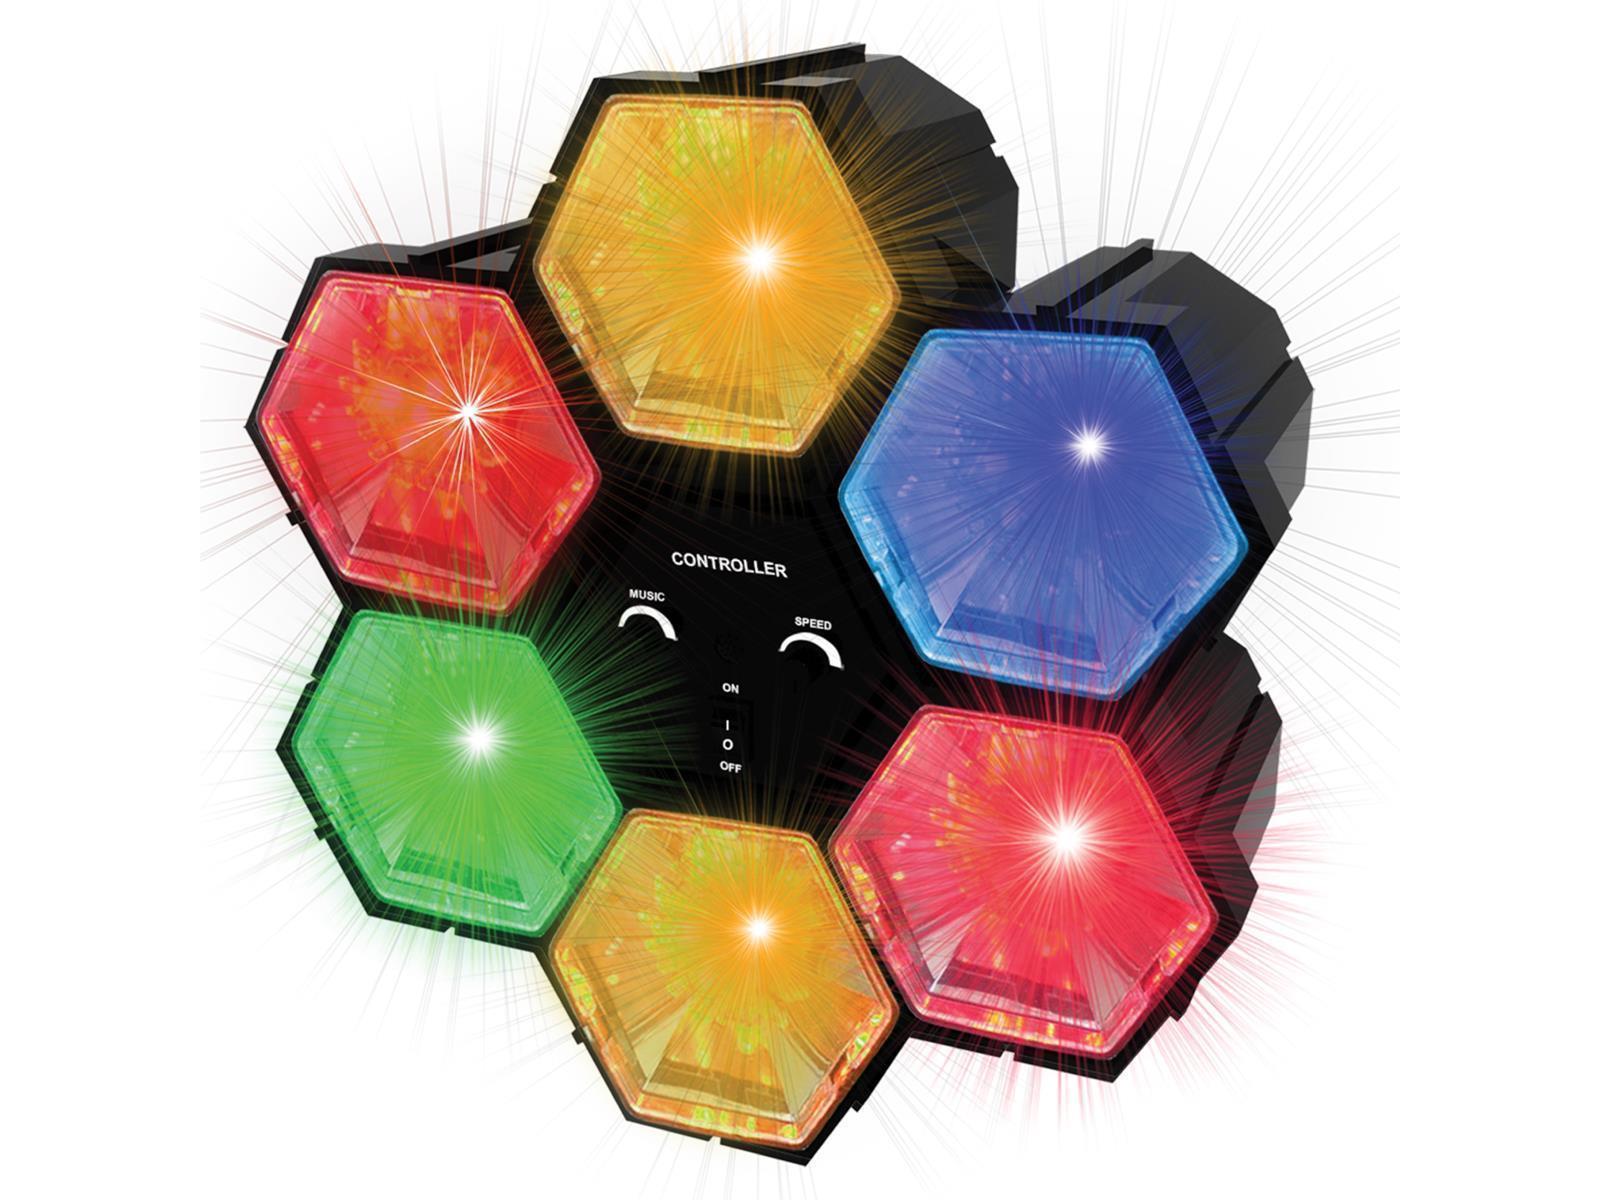 LED Party-Lichtorgel, 1,8m Kabel, Geräuschempfindlich, 4,5V, 90lm, Schwarz